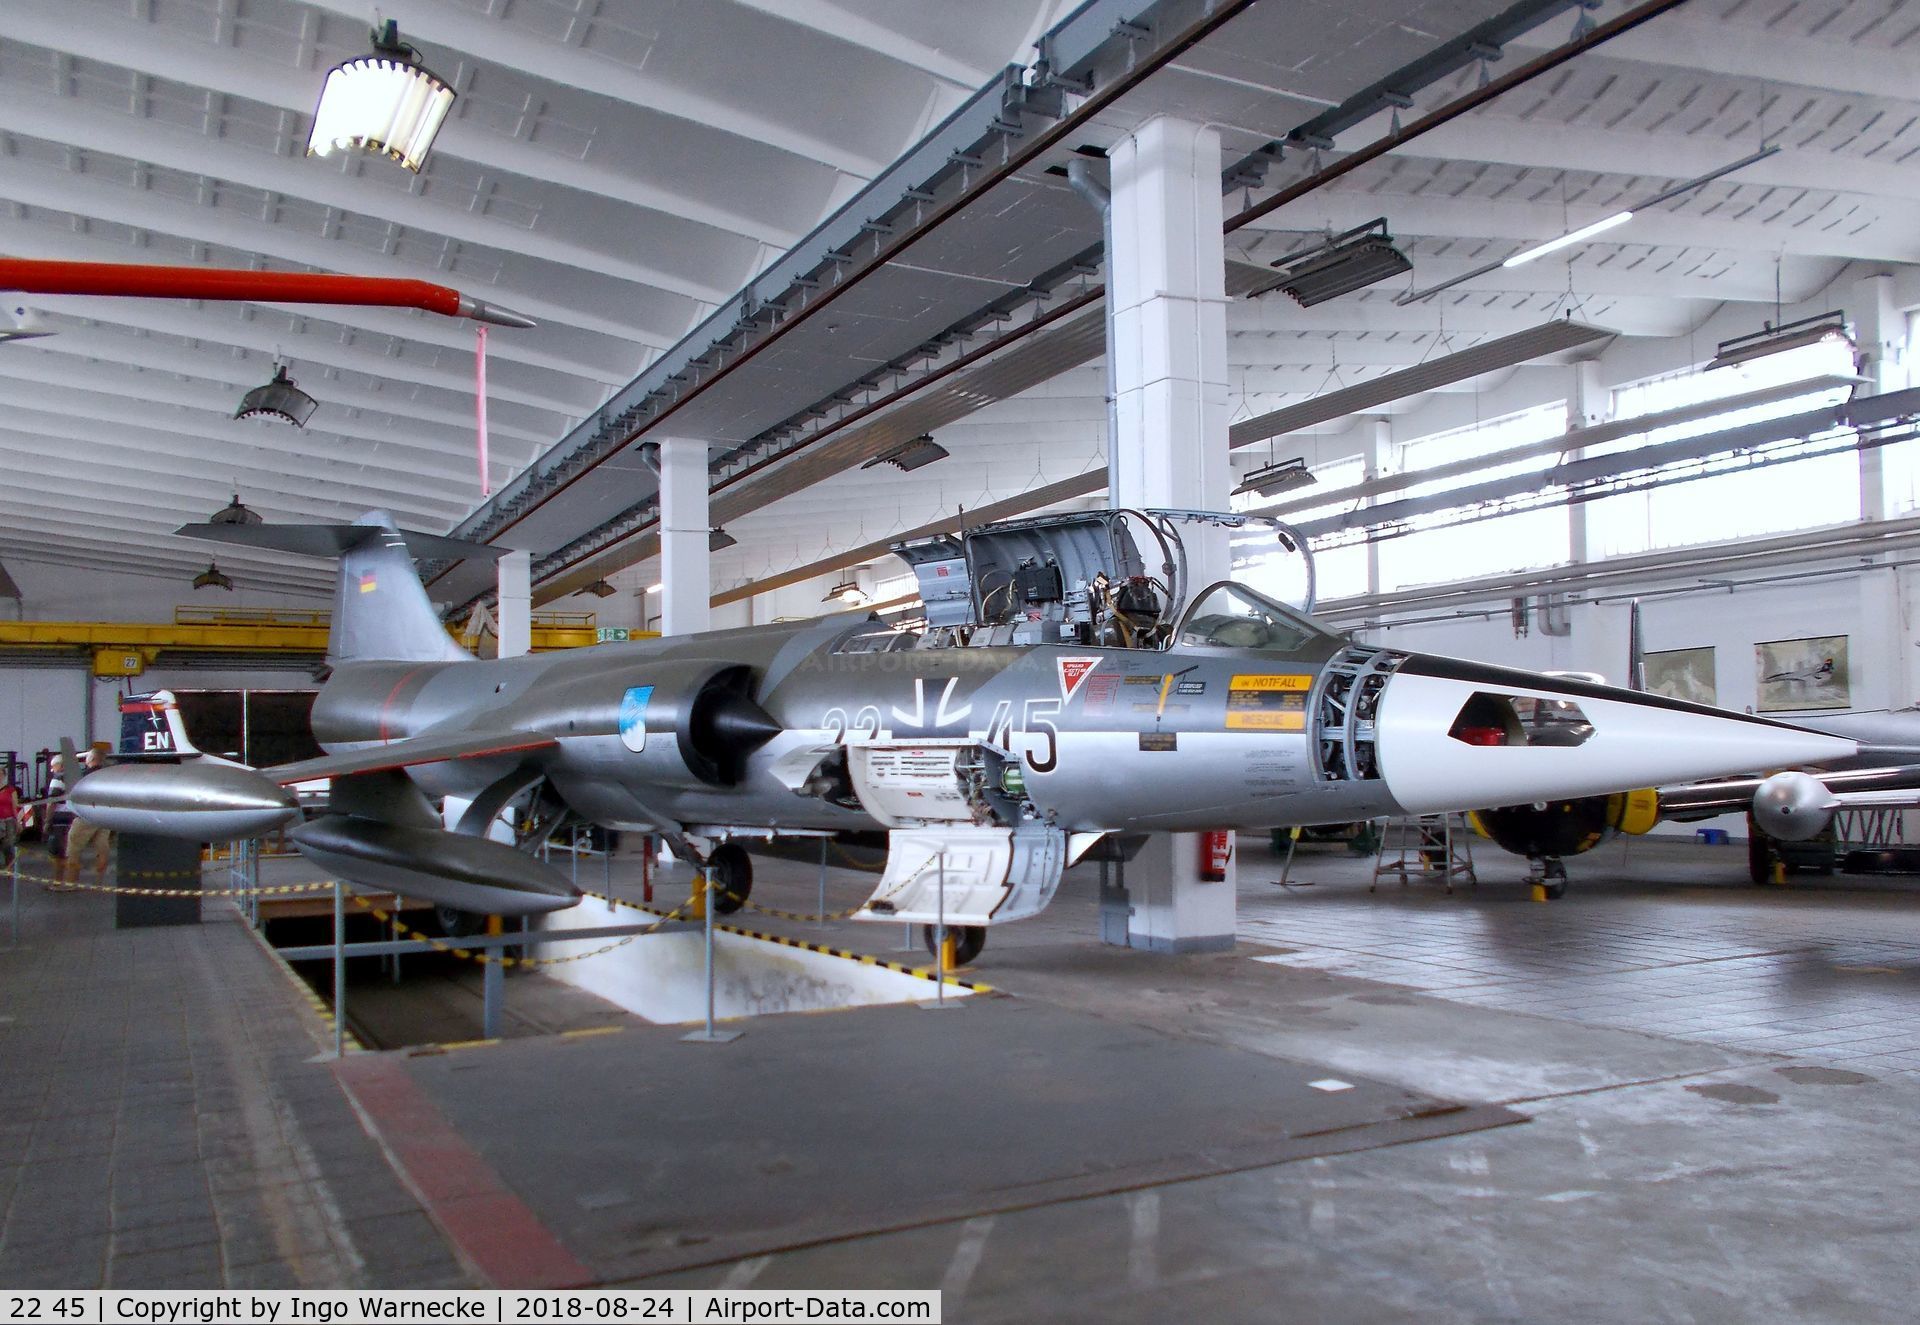 22 45, Lockheed F-104G Starfighter C/N 683-7123, Lockheed F-104G Starfighter at the Museum für Luftfahrt u. Technik, Wernigerode